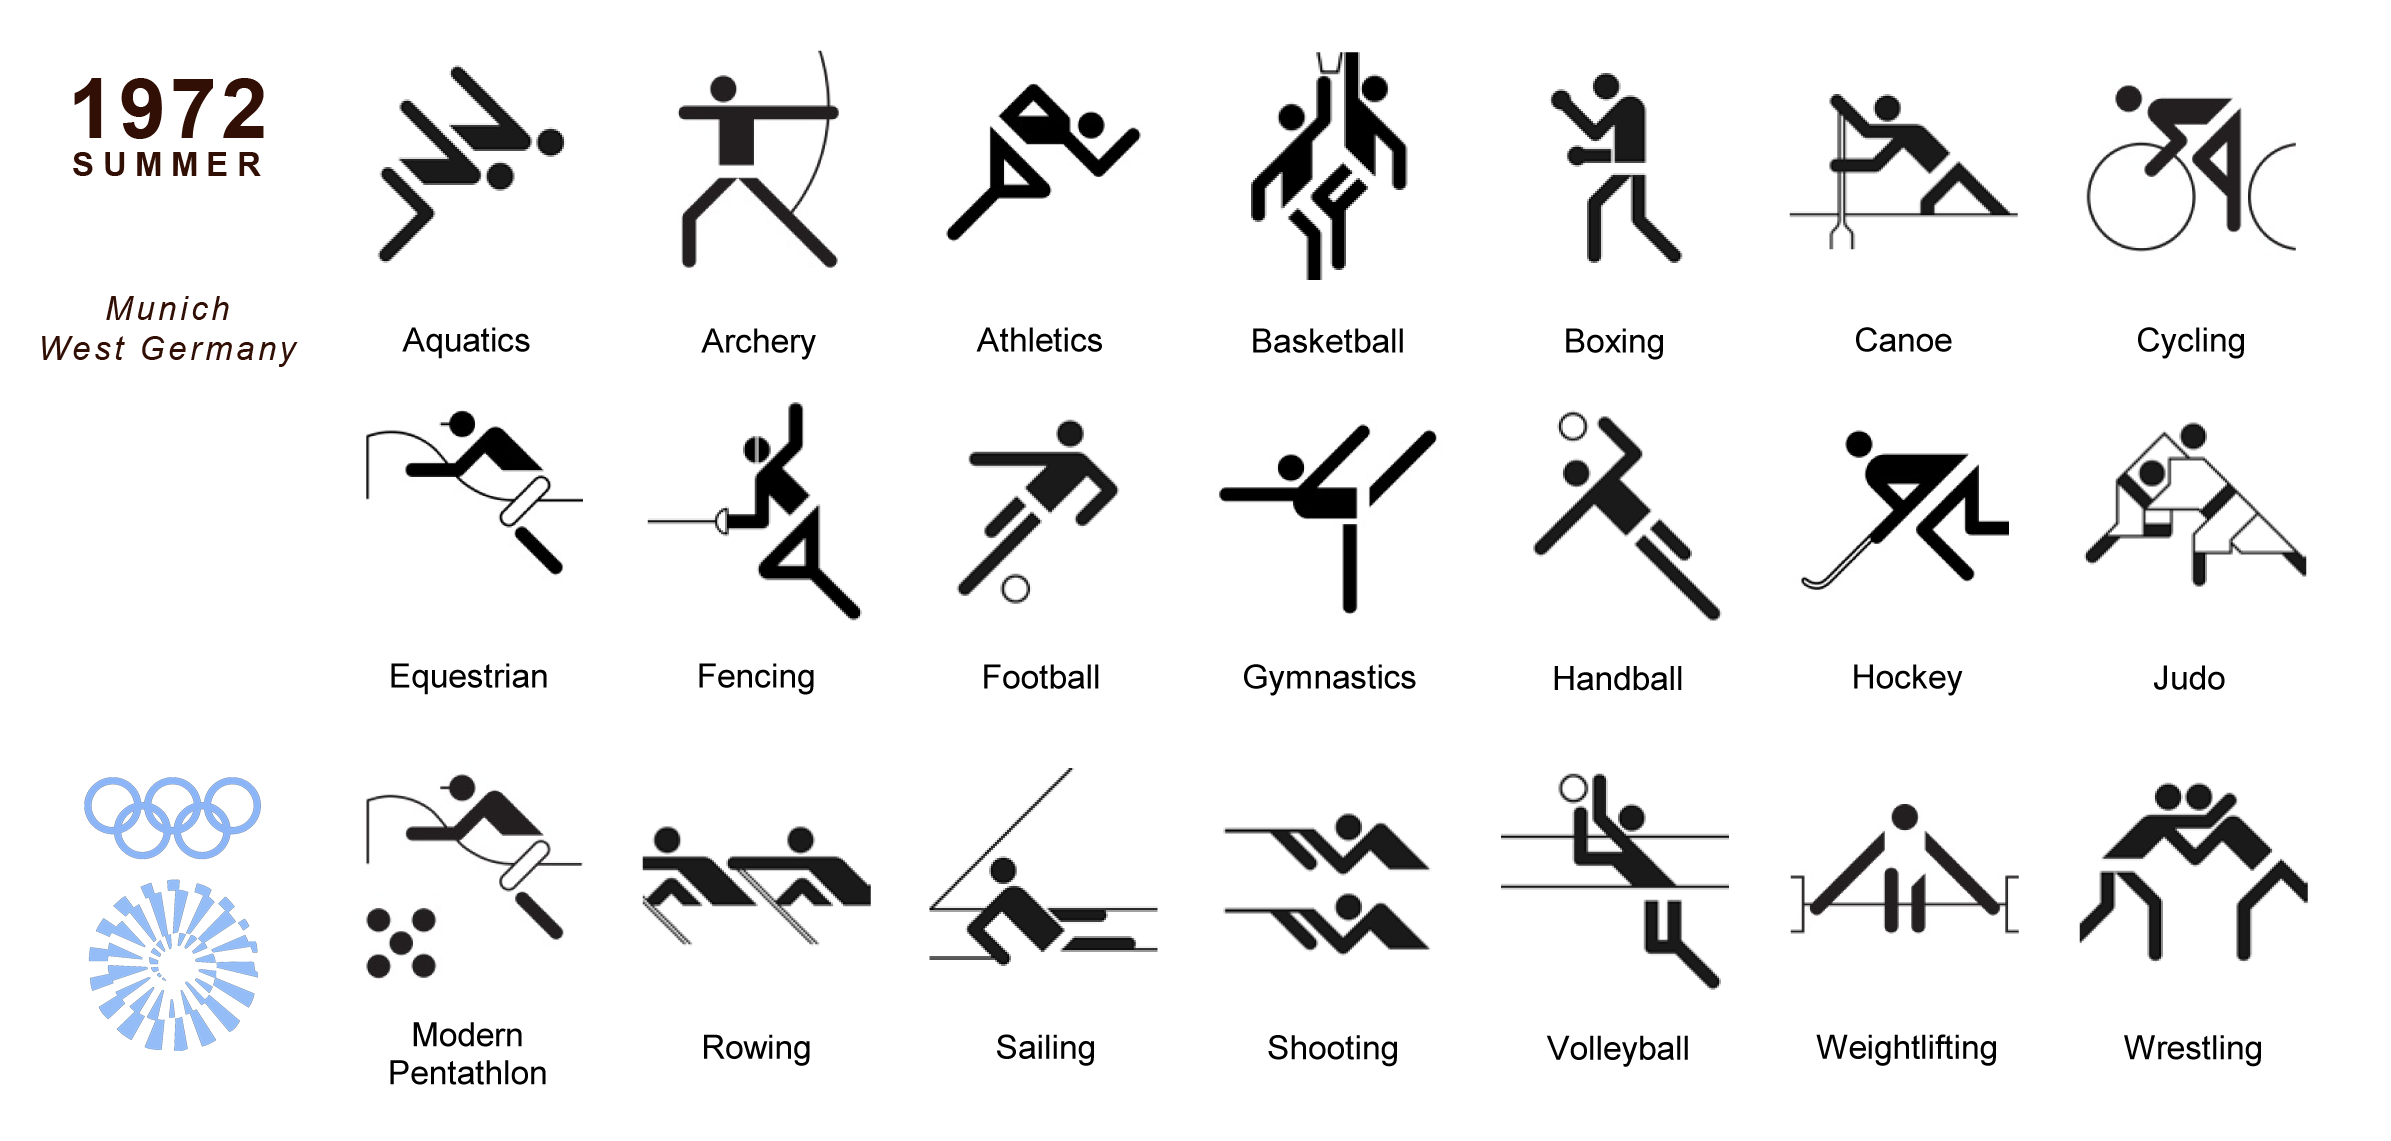 Какие есть спортивные знаки. Вид спорта, изображенный на пиктограмме:. Схематические обозначения видов спорта. Пентаграмма Олимпийских видов спорта.